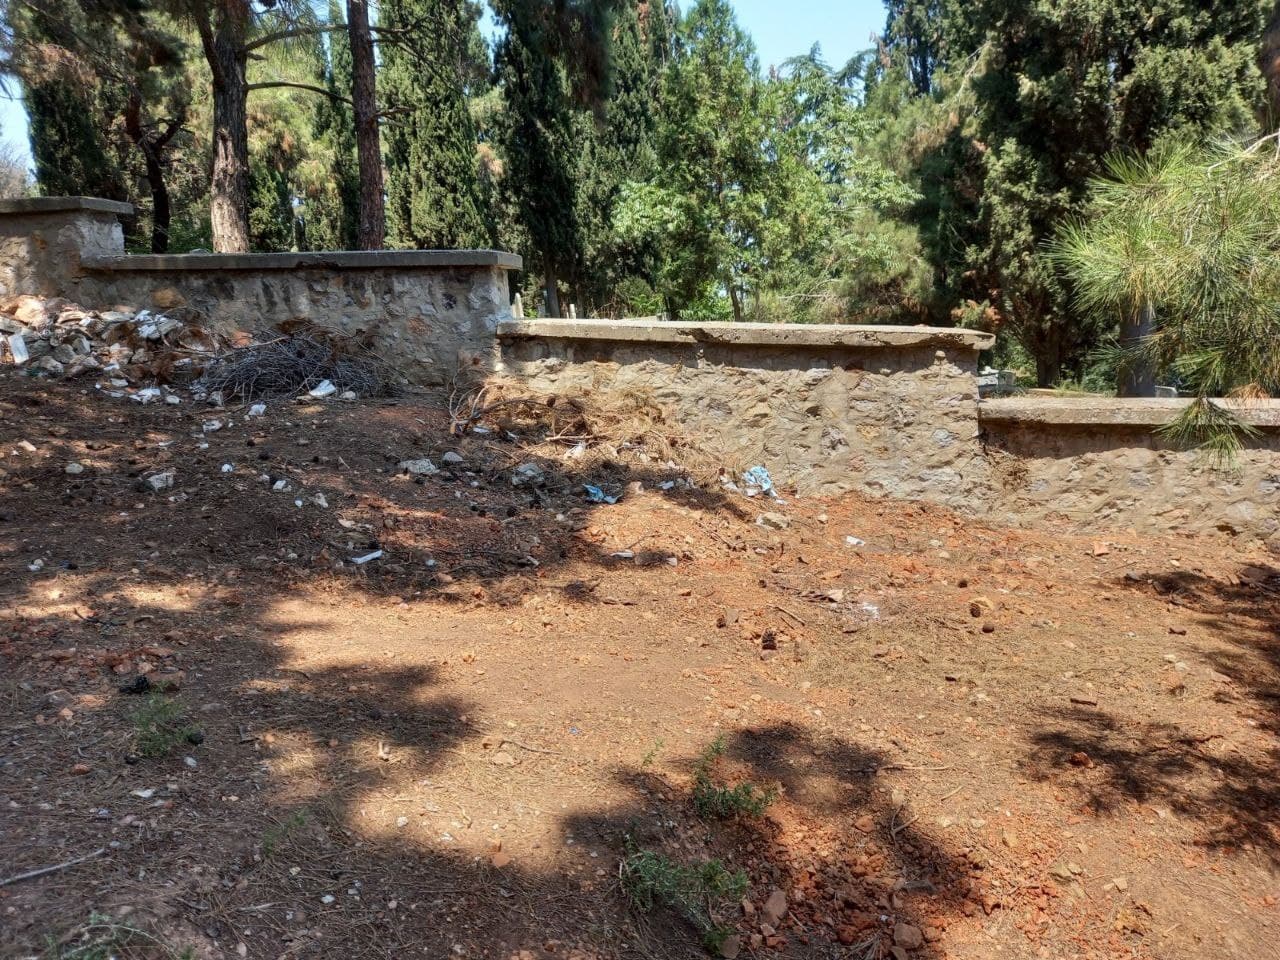 Büyükada’da defin yeri kalmadı! CHP’li İBB’den skandal çözüm: Kaçak mezarlık